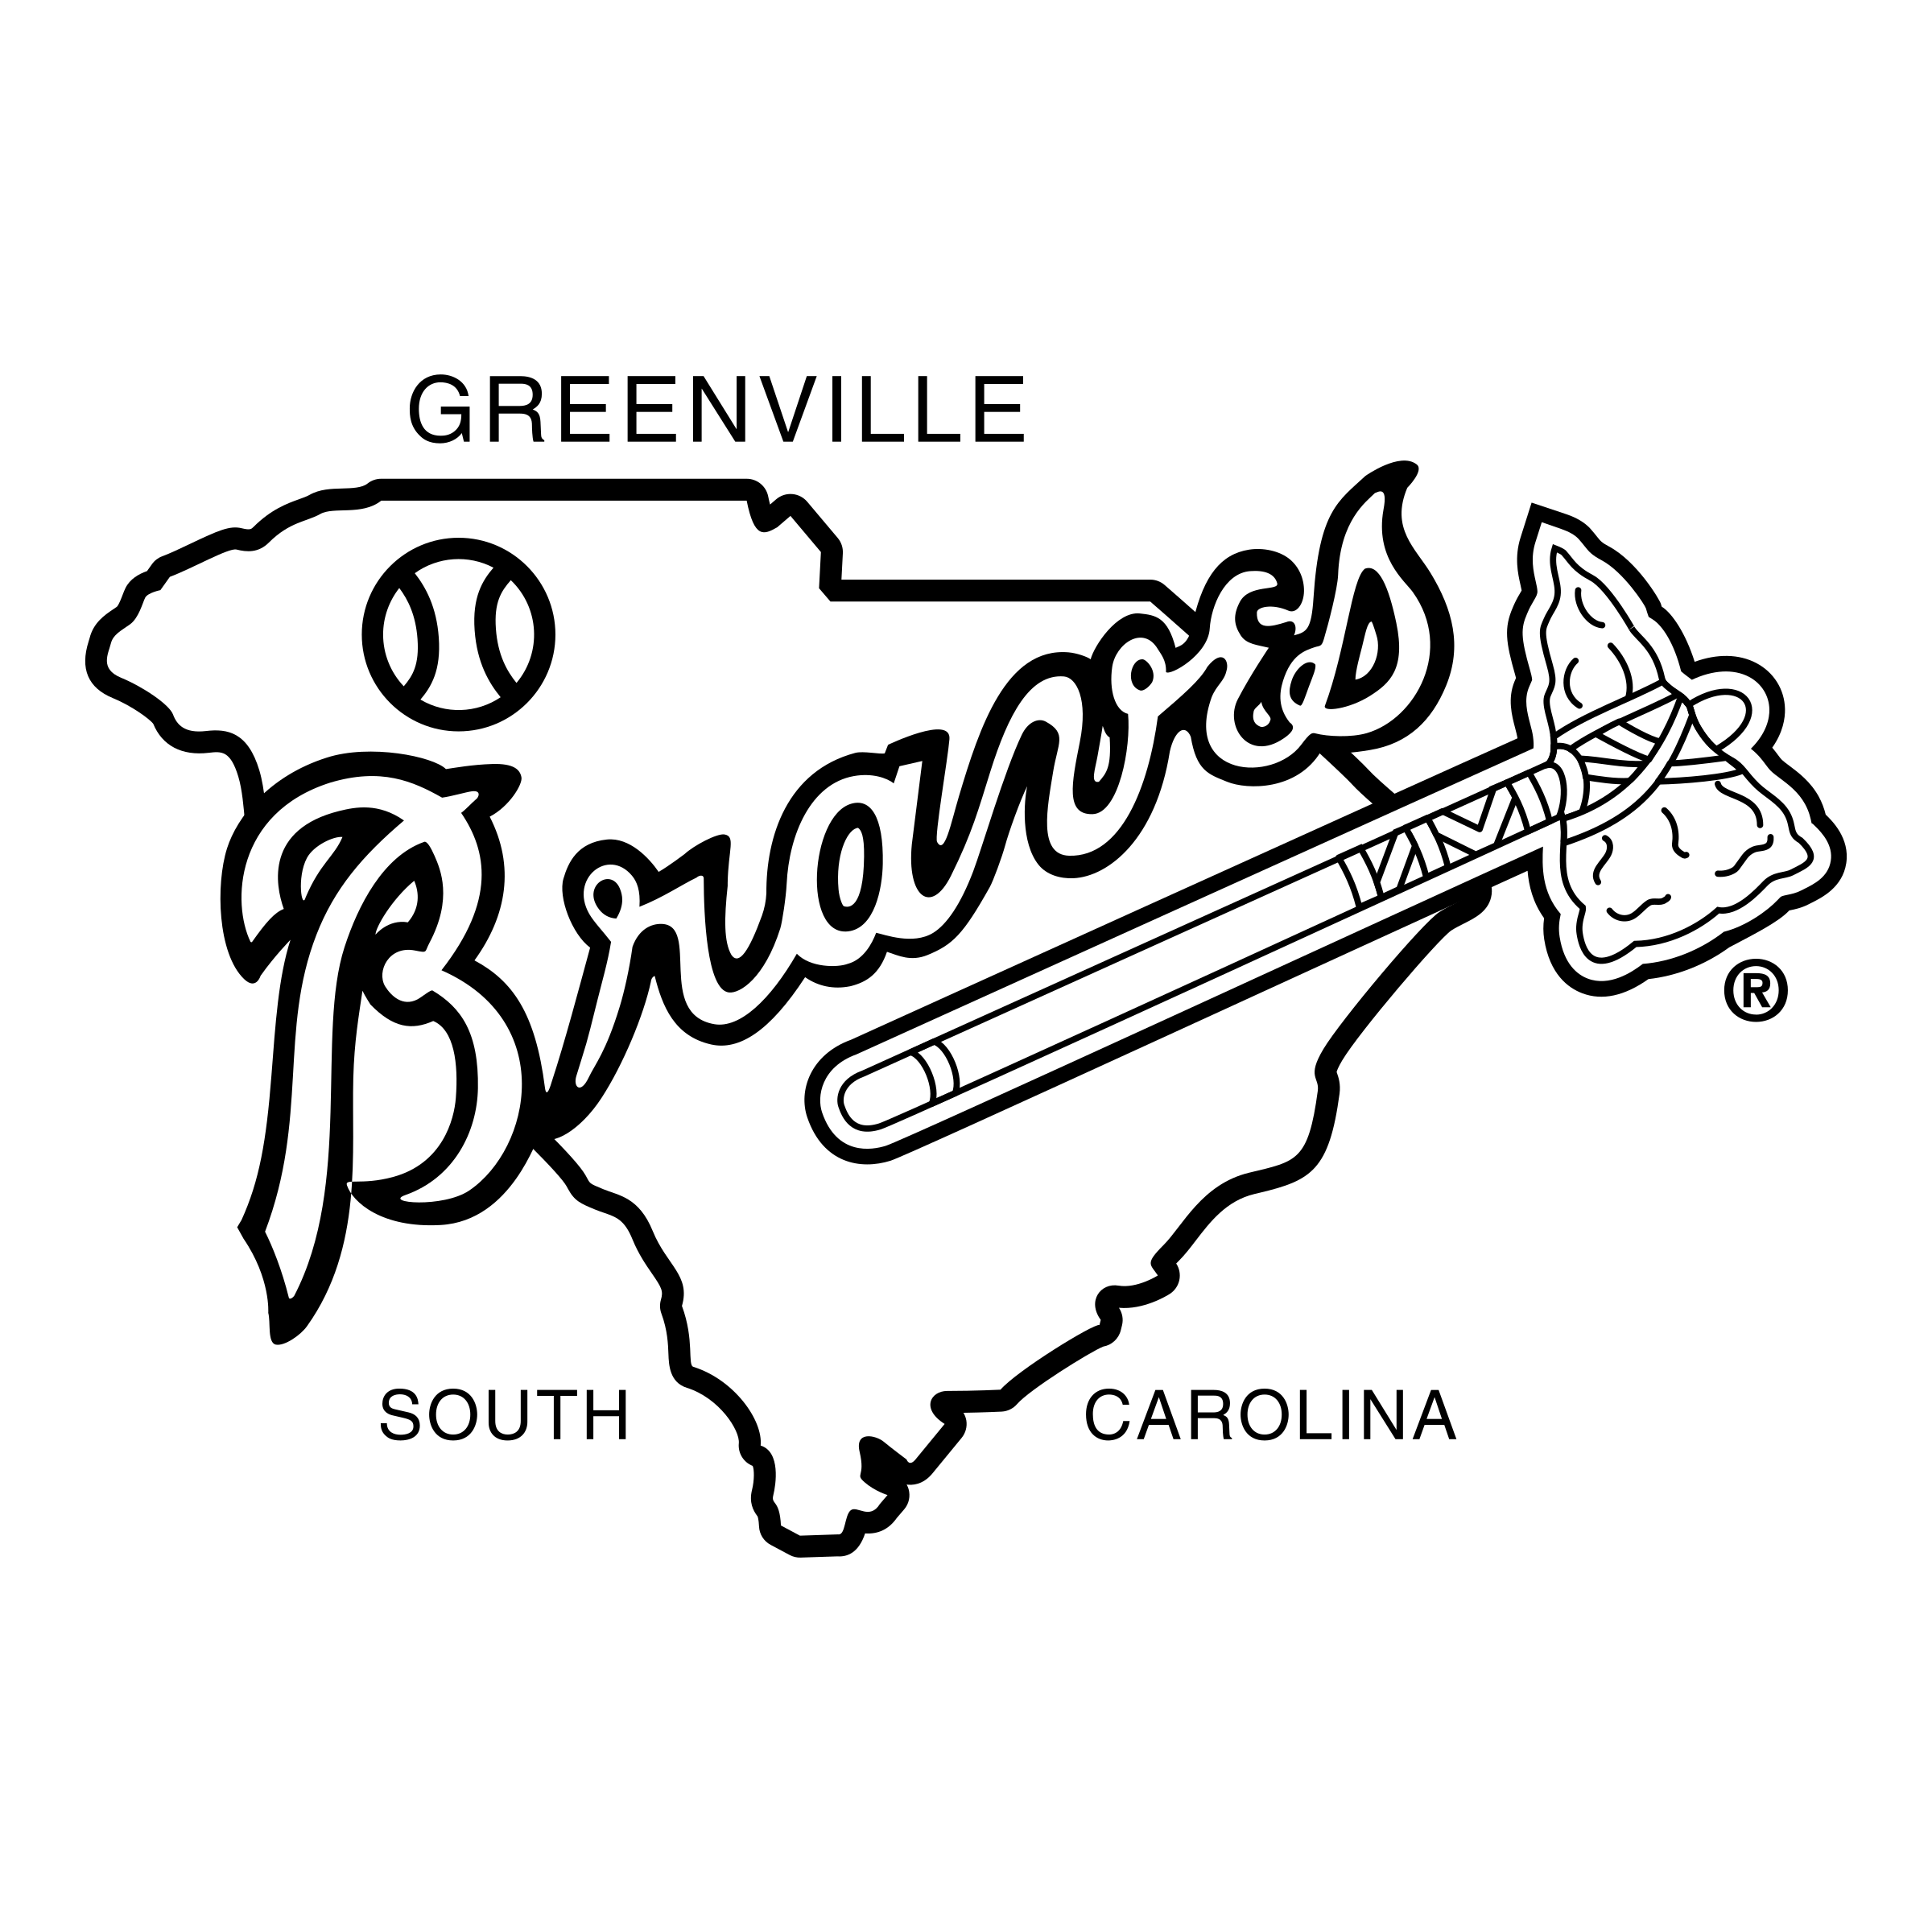 Braves Logo Transparent Images